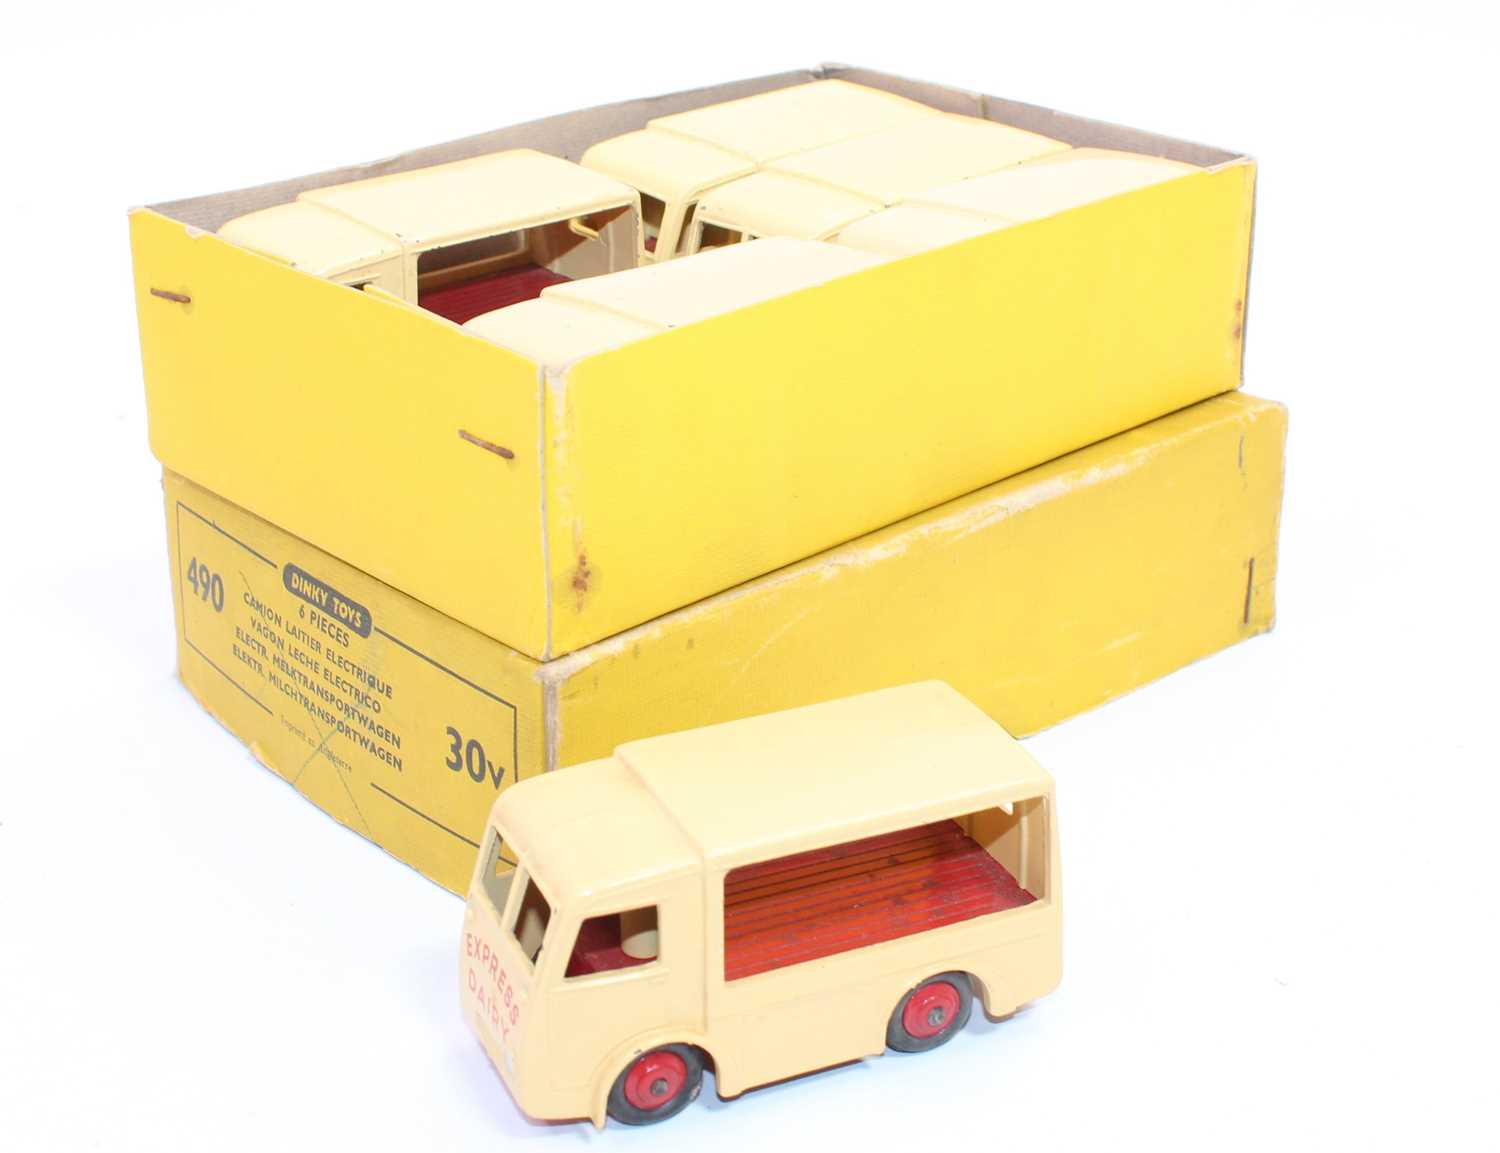 Lot 1016 - A Dinky Toys No.490/30V original trade box...